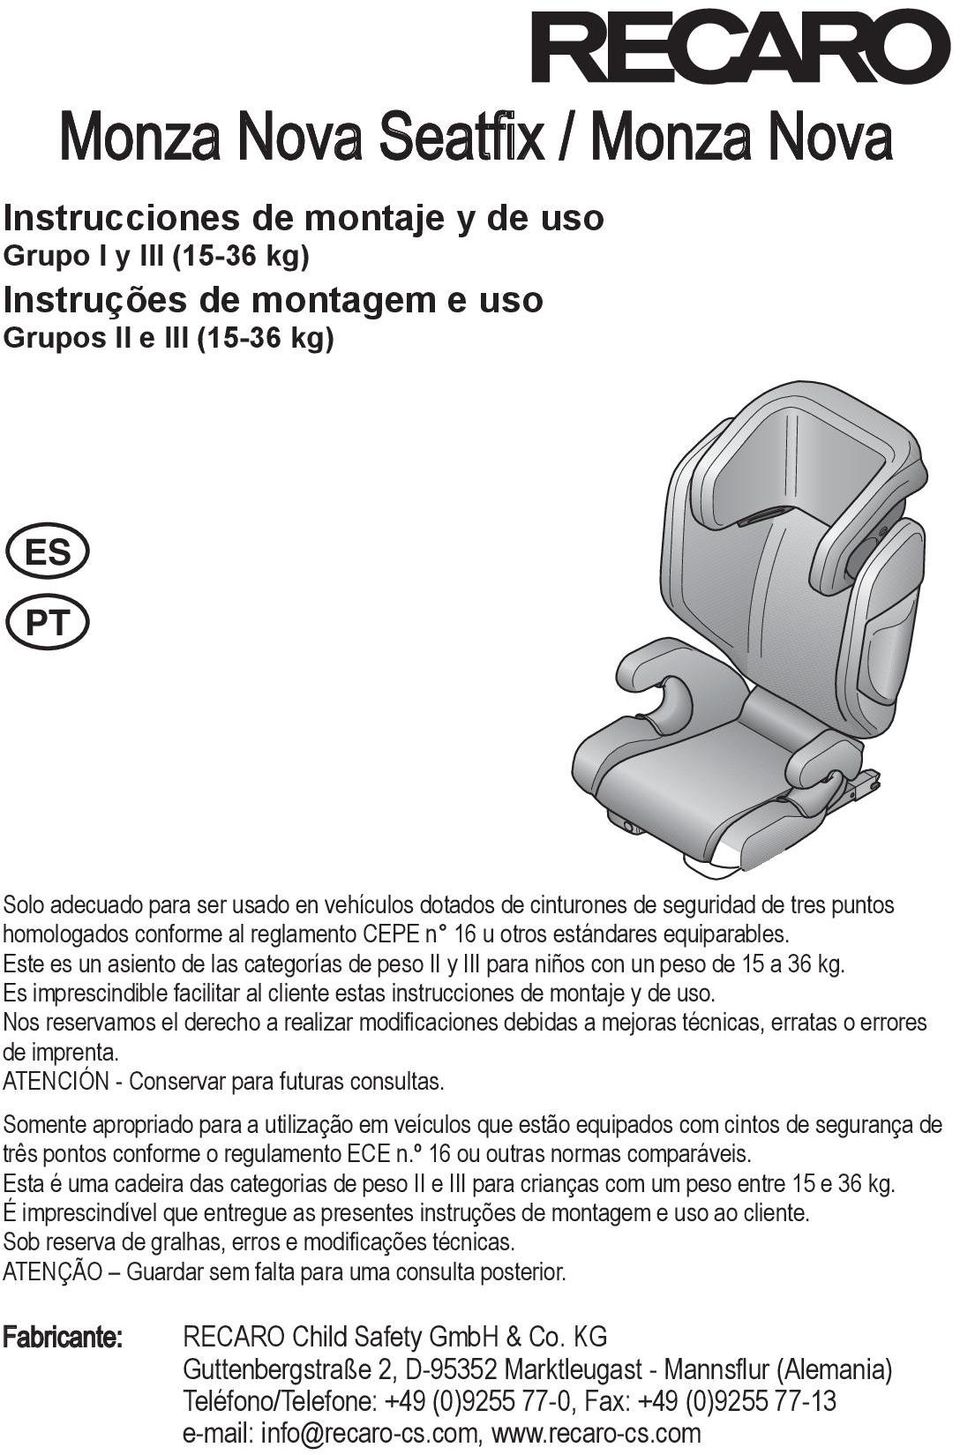 Este CNes un asiento TWde las categorías de peso II y III para niños con un peso de 15 a 36 kg. Es imprescindible facilitar al cliente estas instrucciones de montaje y de uso.